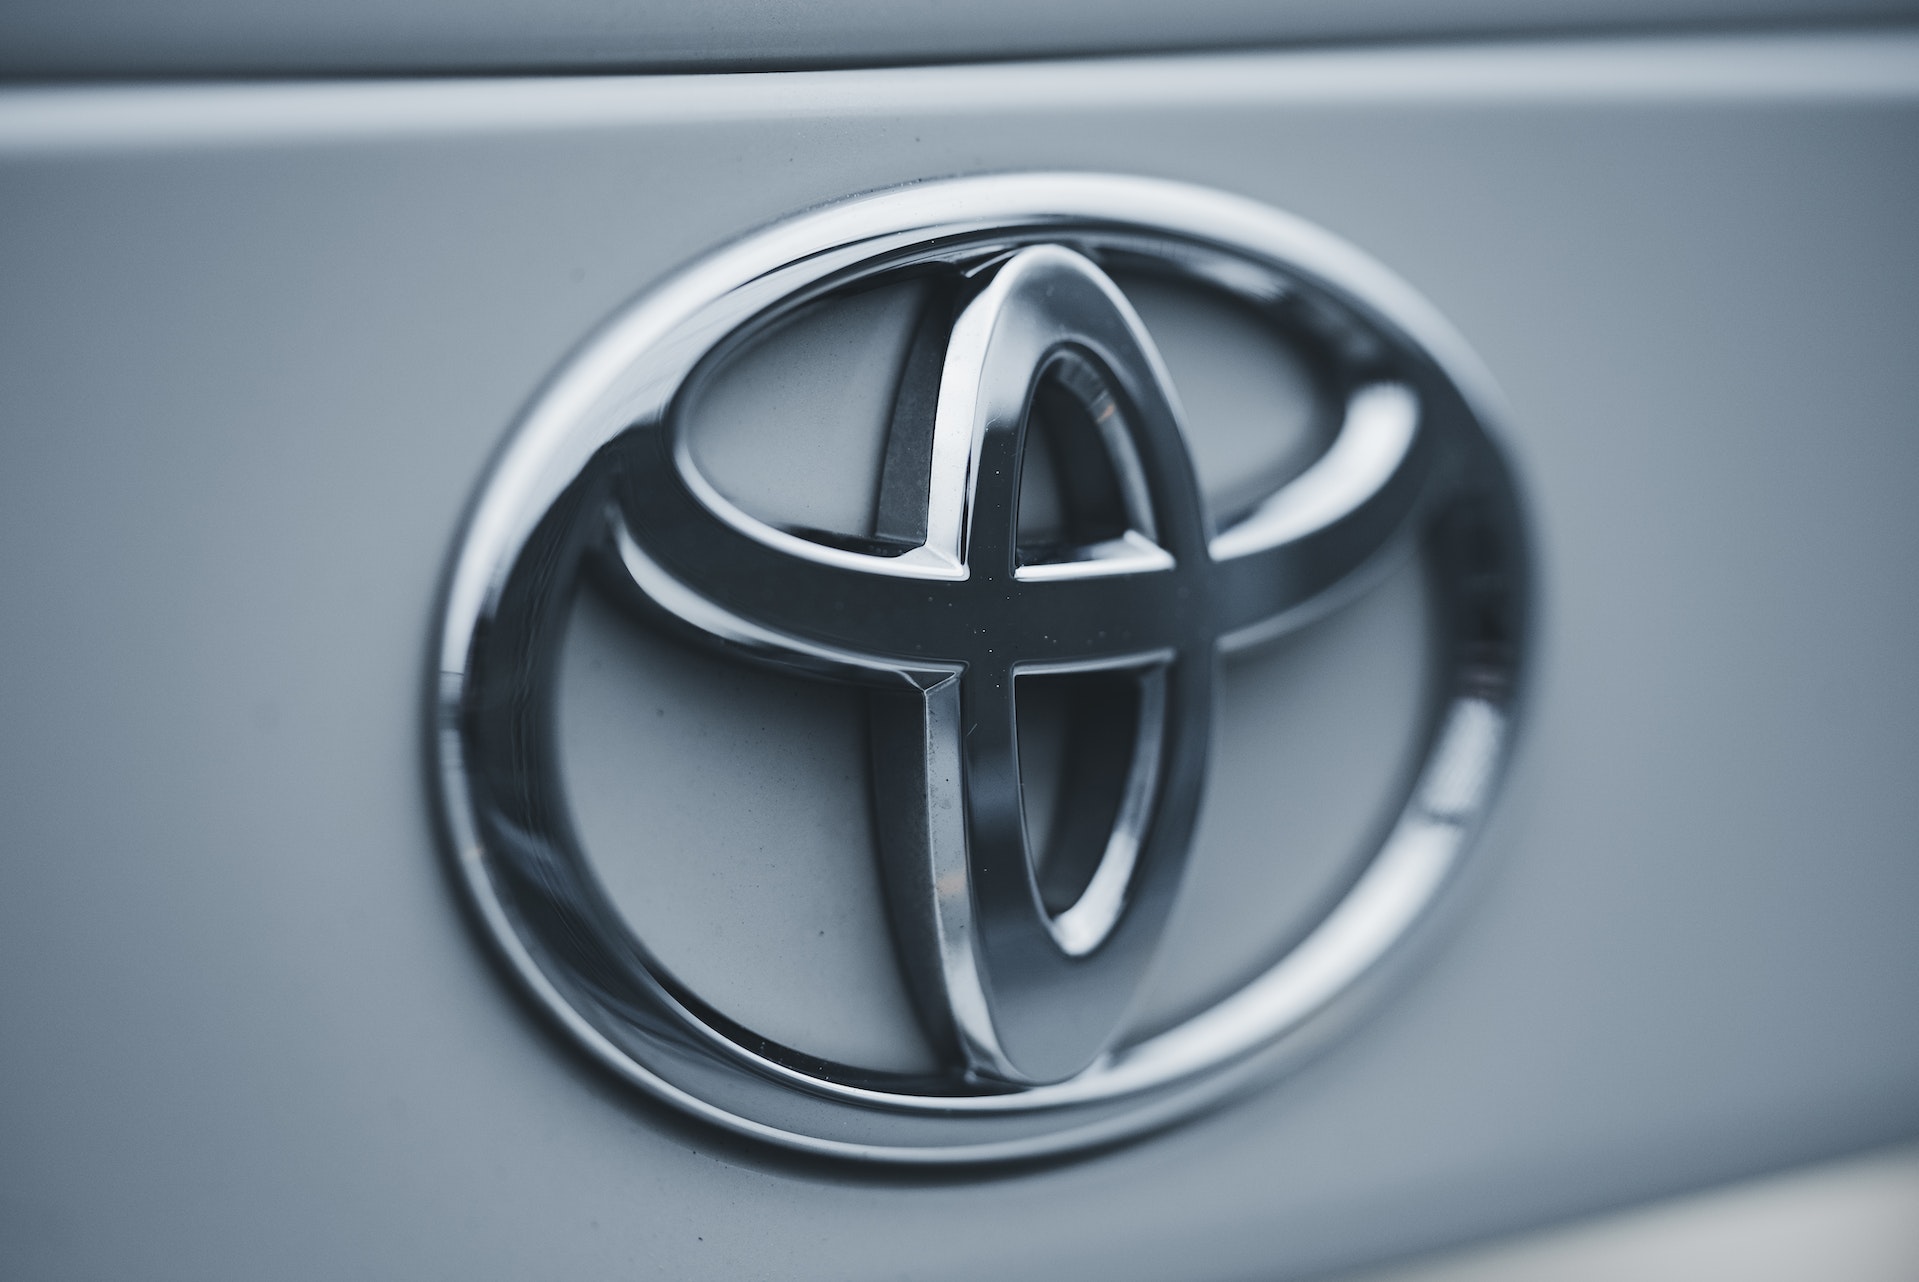 Dettaglio sul logo della Toyota